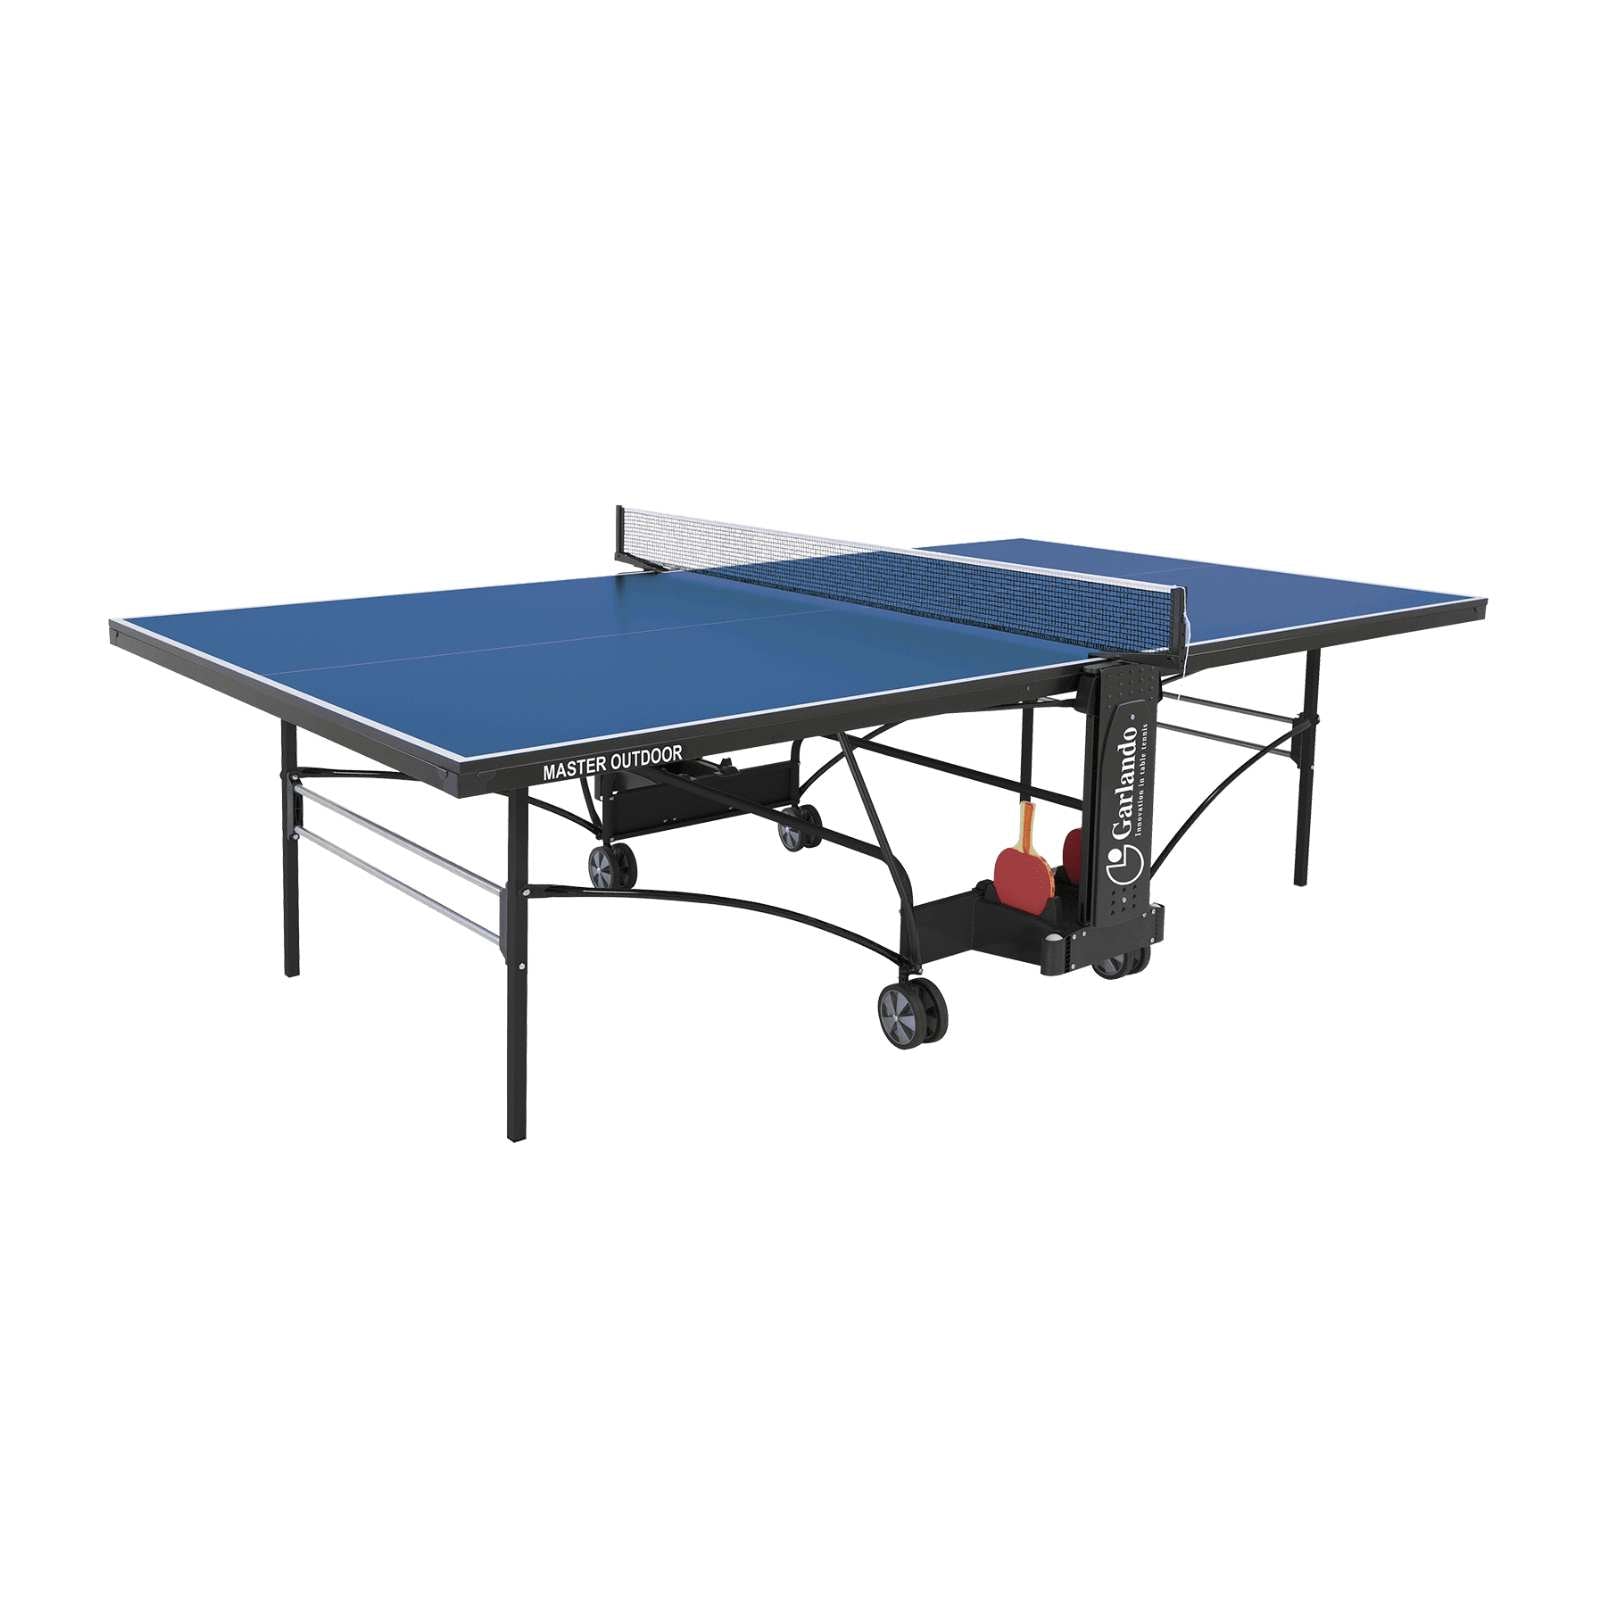 Master Outdoor - Tavolo Ping Pong Pieghevole con Sistema Ergonomico ECS - Struttura con Doppie Barre